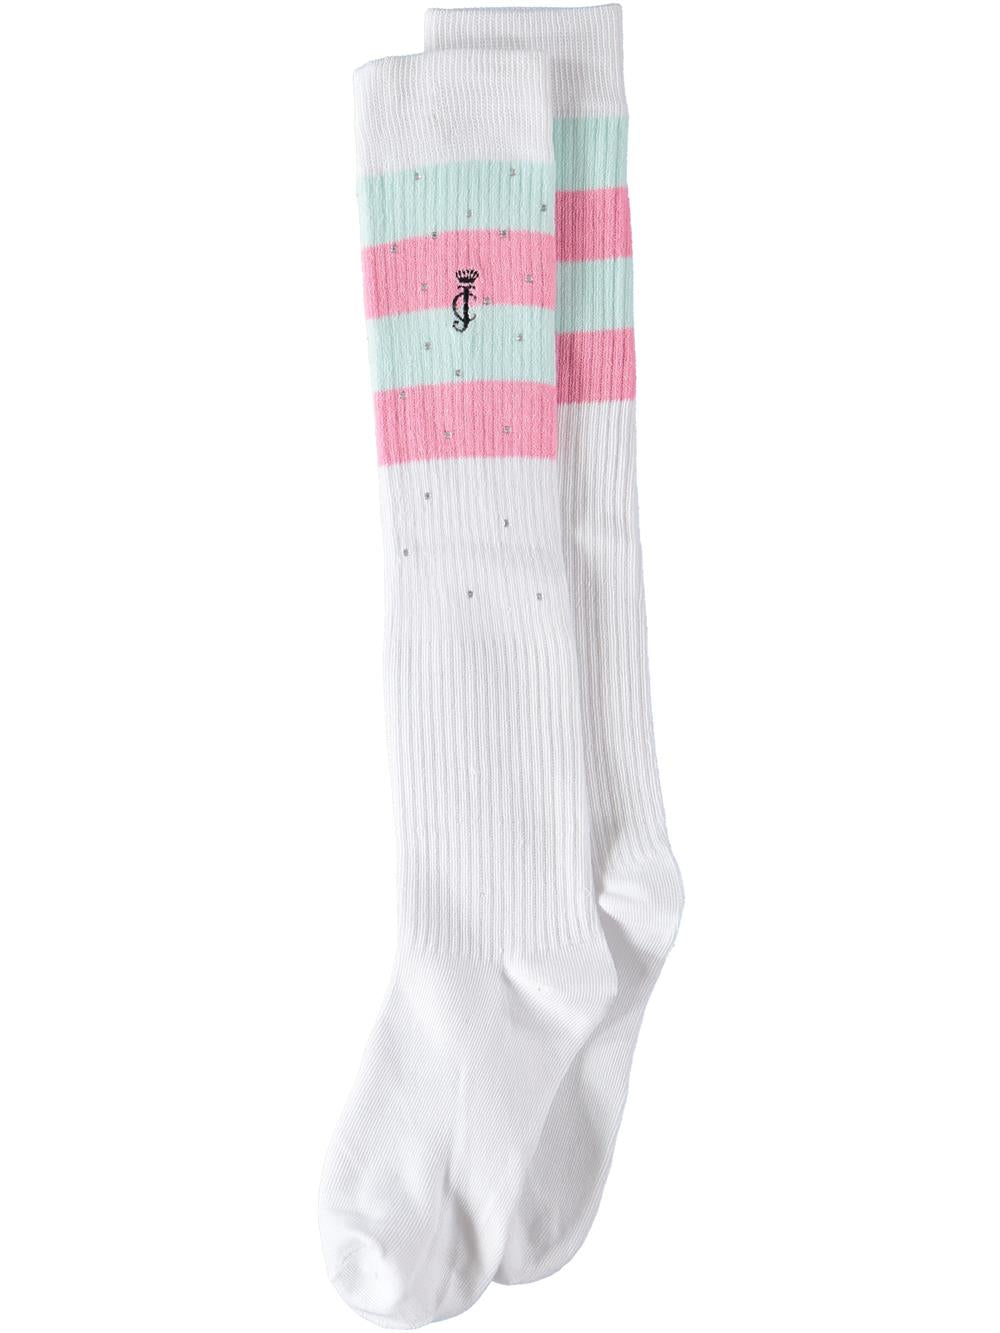 Juicy Couture Girls 7-16 Knee High Socks, 1 Pair